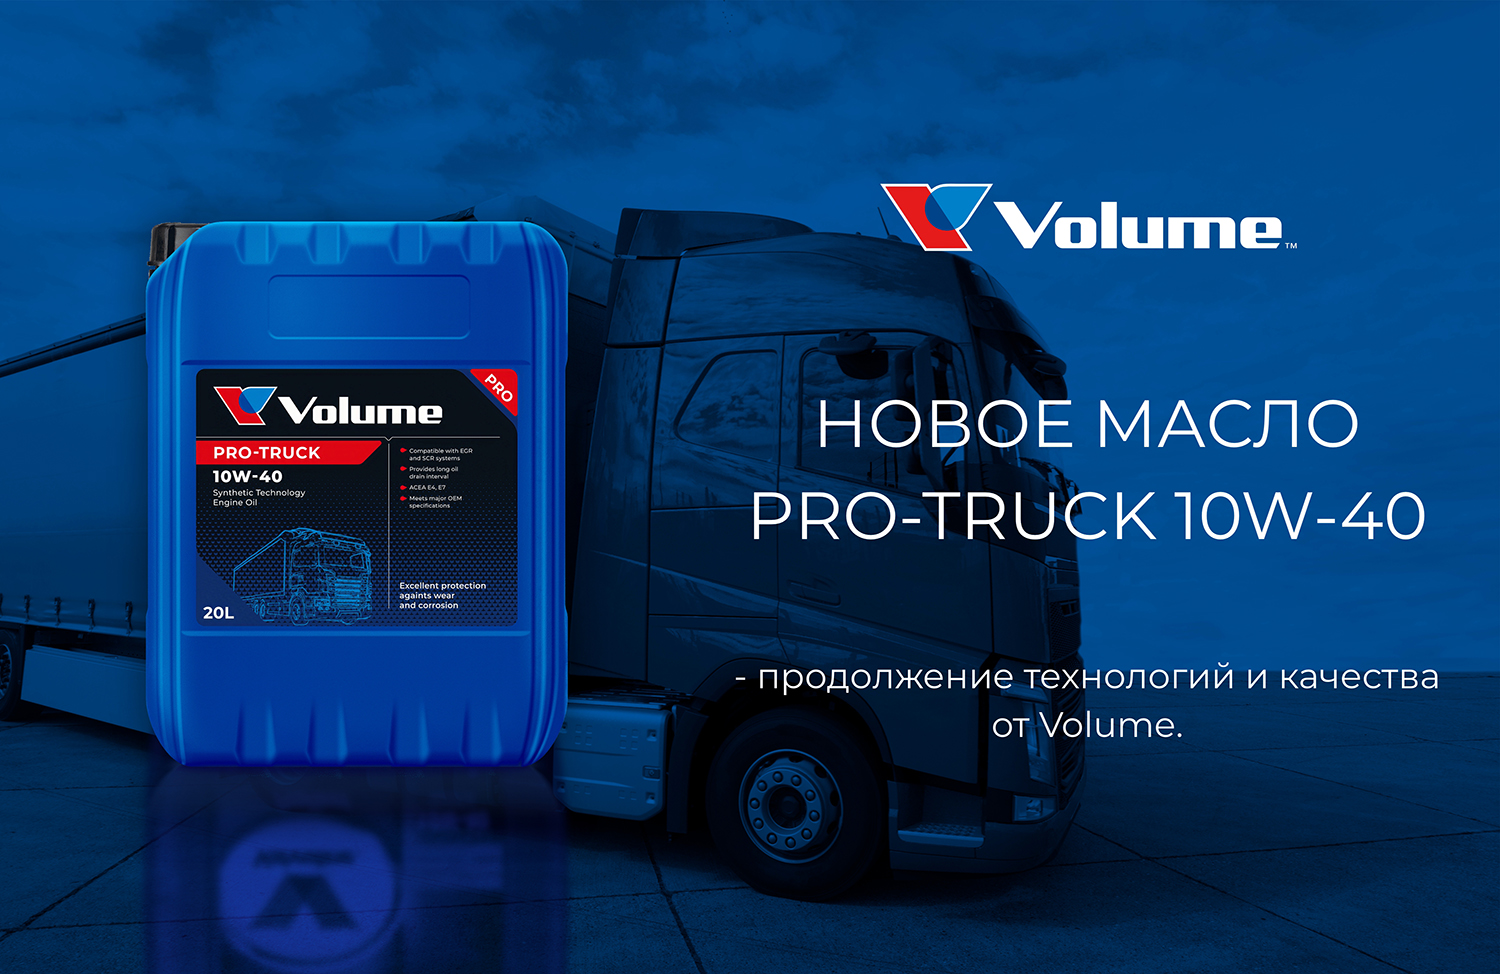 Моторное масло Pro-Truck 10W-40 — продолжение технологий и качества Valvoline от Volume